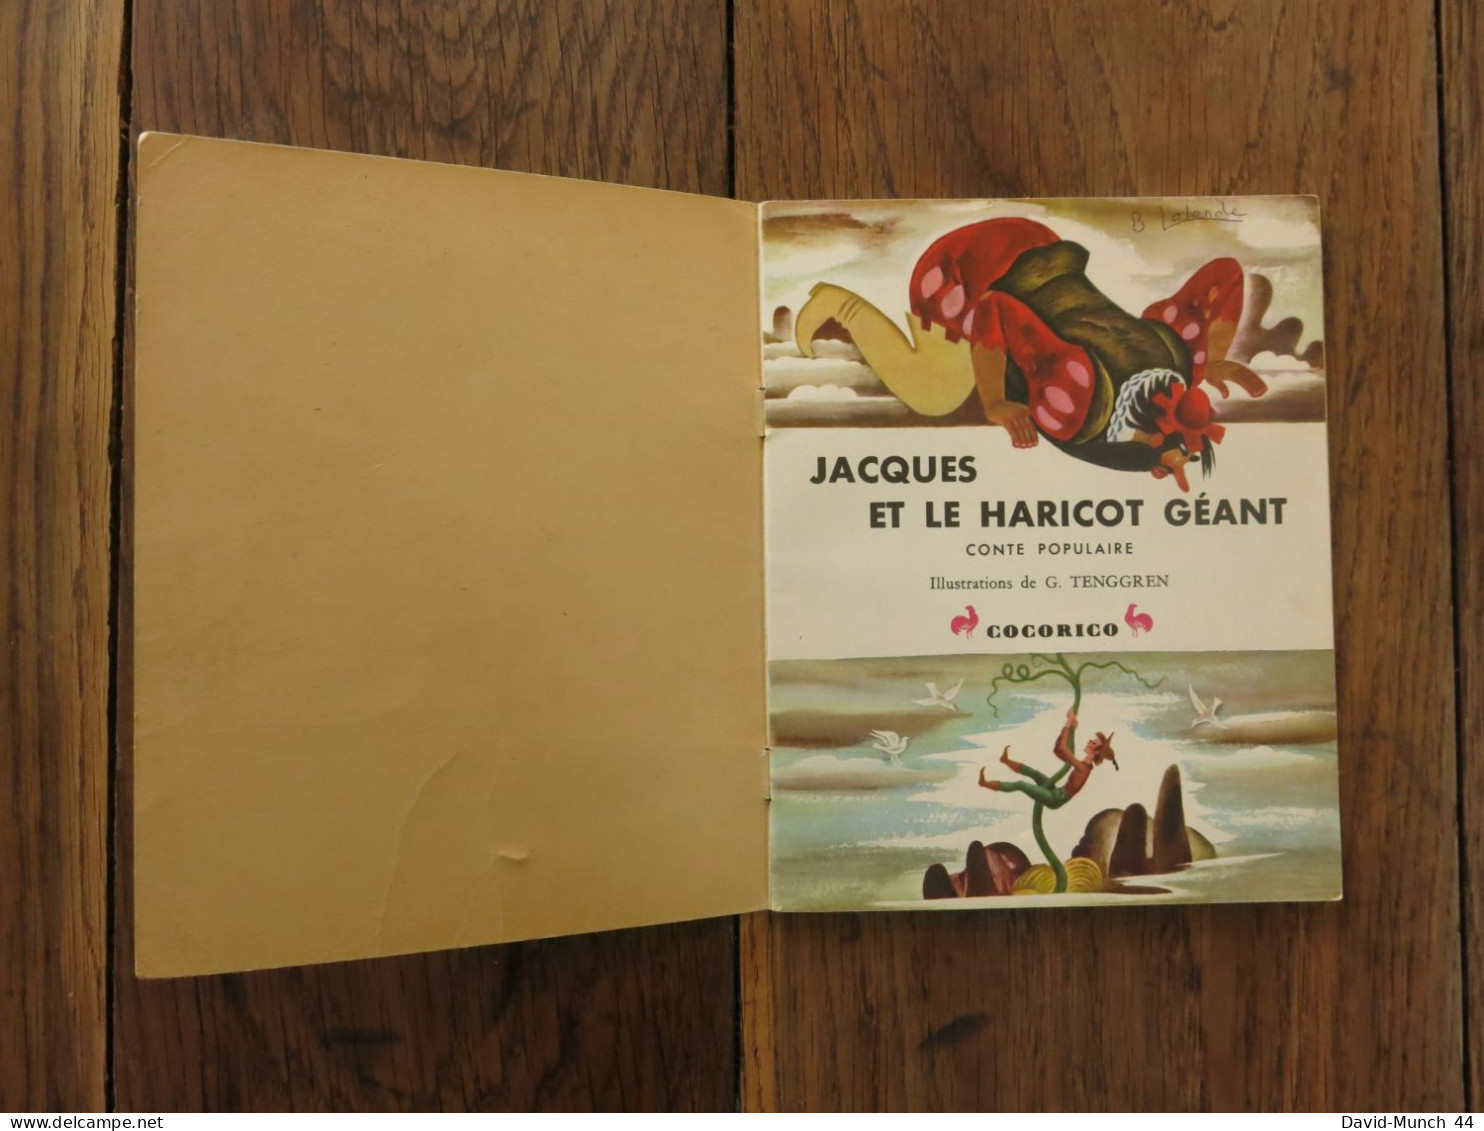 Jacques Et Le Haricot Géant Illustré Par Gustaf Tenggren. Les éditions Cocorico, Un Petit Livre D'argent. 1956 - Contes